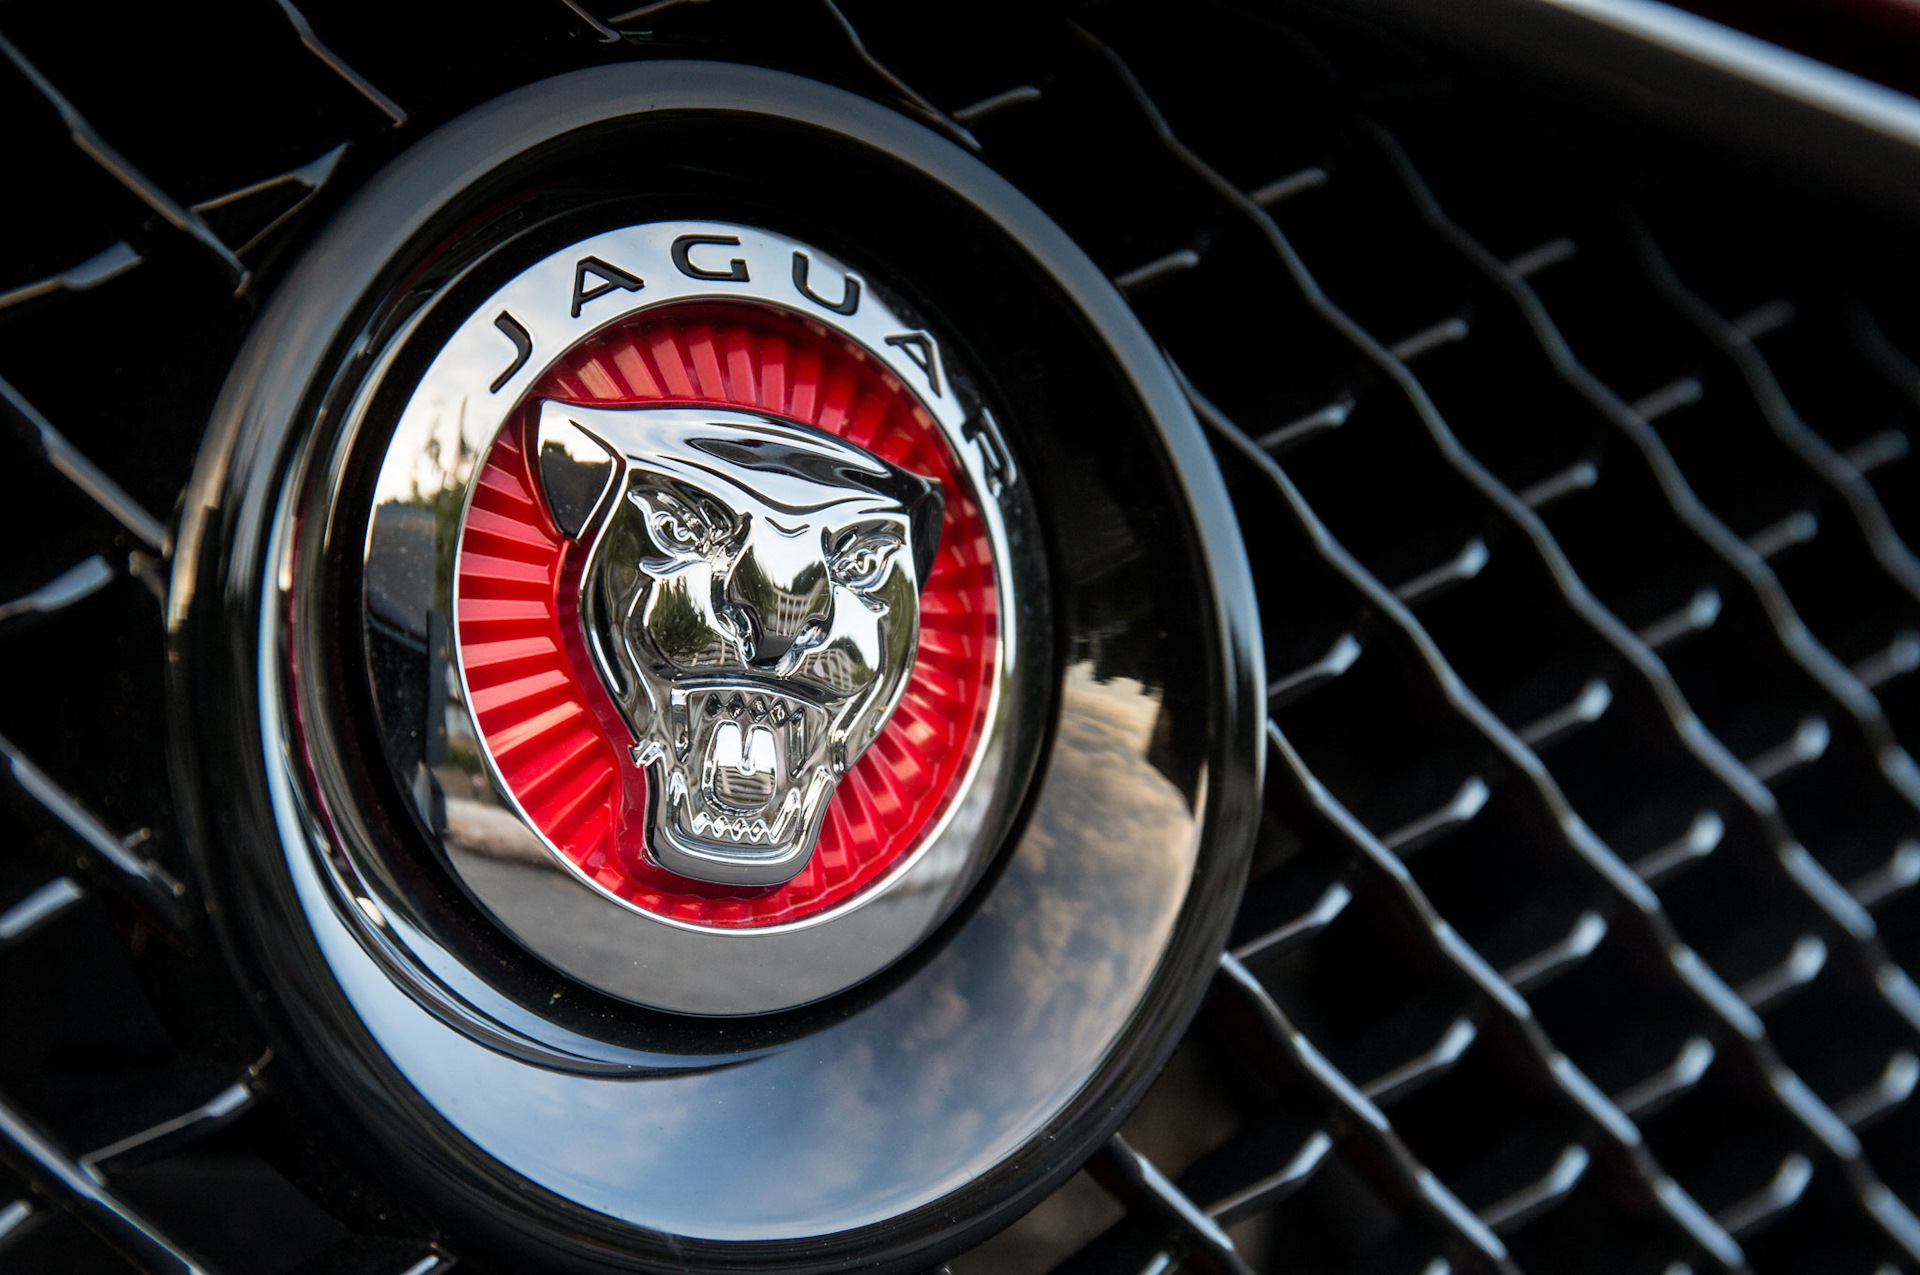 Авто со столичным знаком. Ягуар марка автомобиля. Авто эмблема yaguar. Марка машины с львом на эмблеме. Знак в машину.